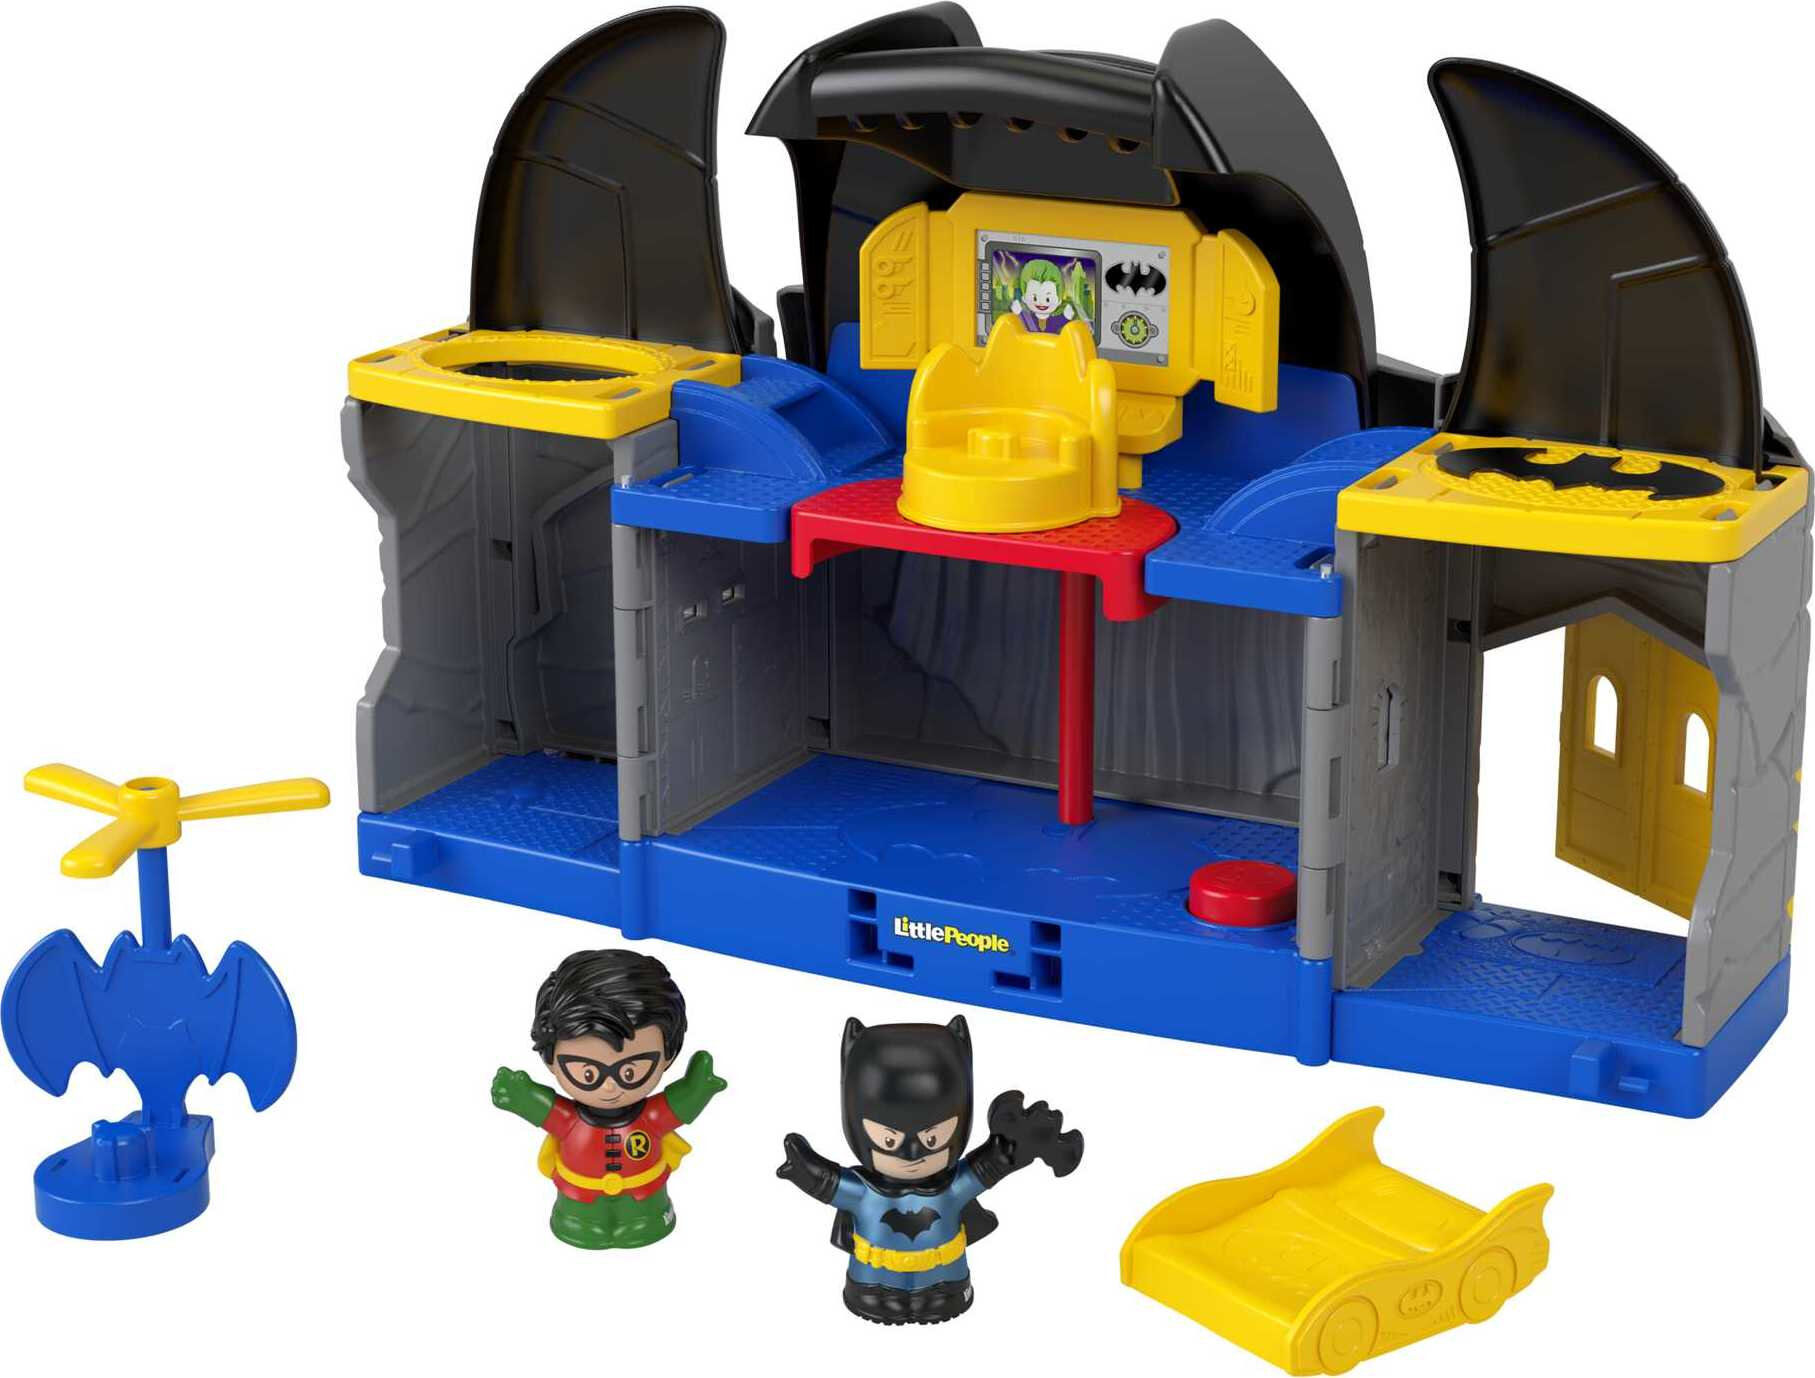 Little People DC Super Friends Batcave, Batman Playset - image 1 of 7